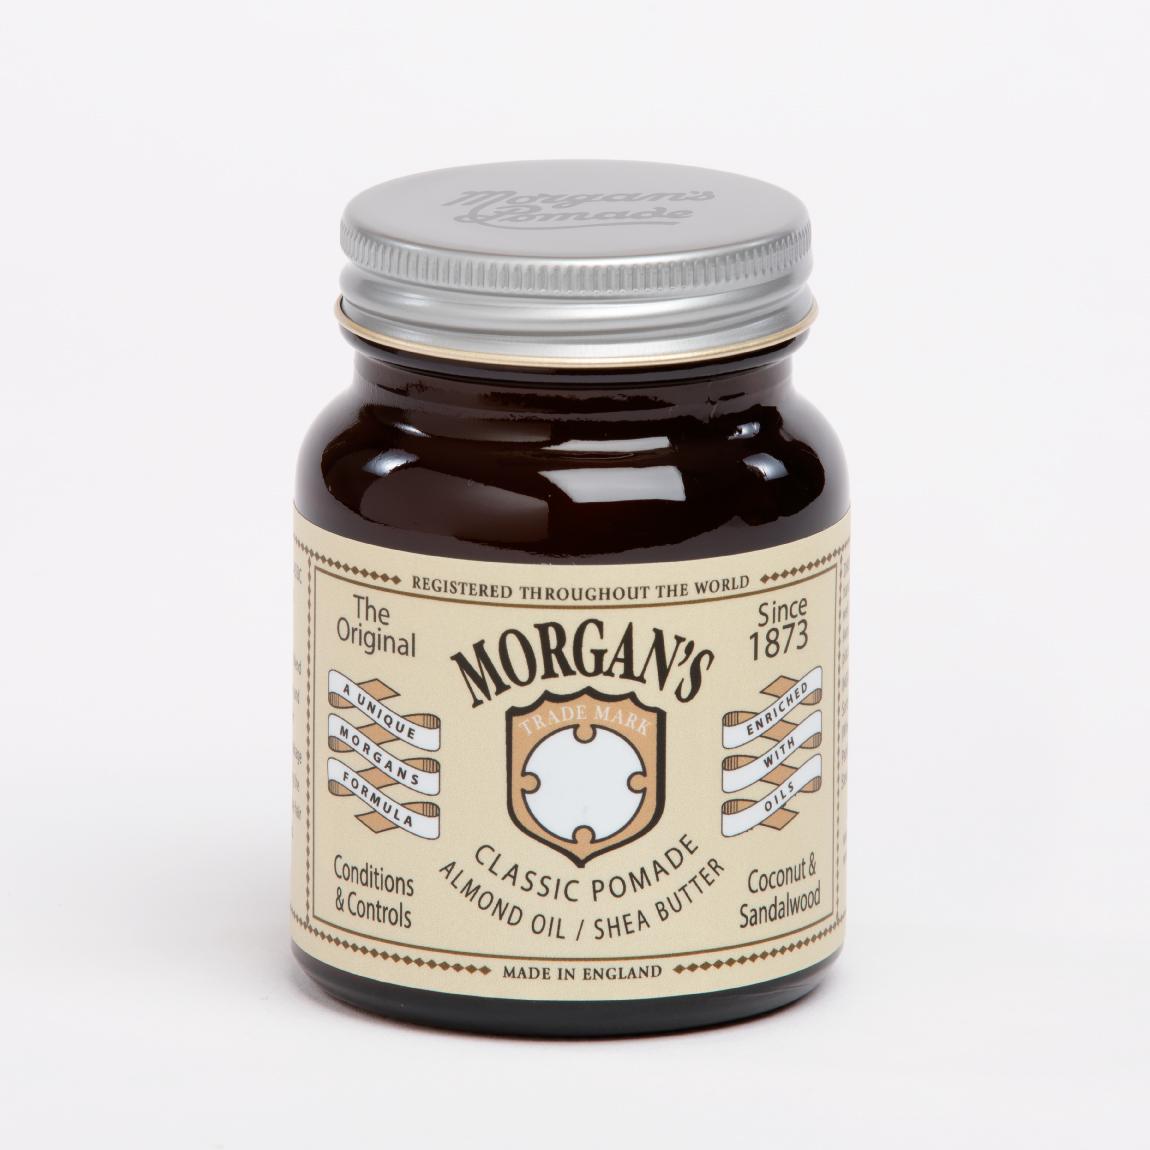 MORGAN'S POMADE Класична помада за коса со бадемово и ши масло 100 г.